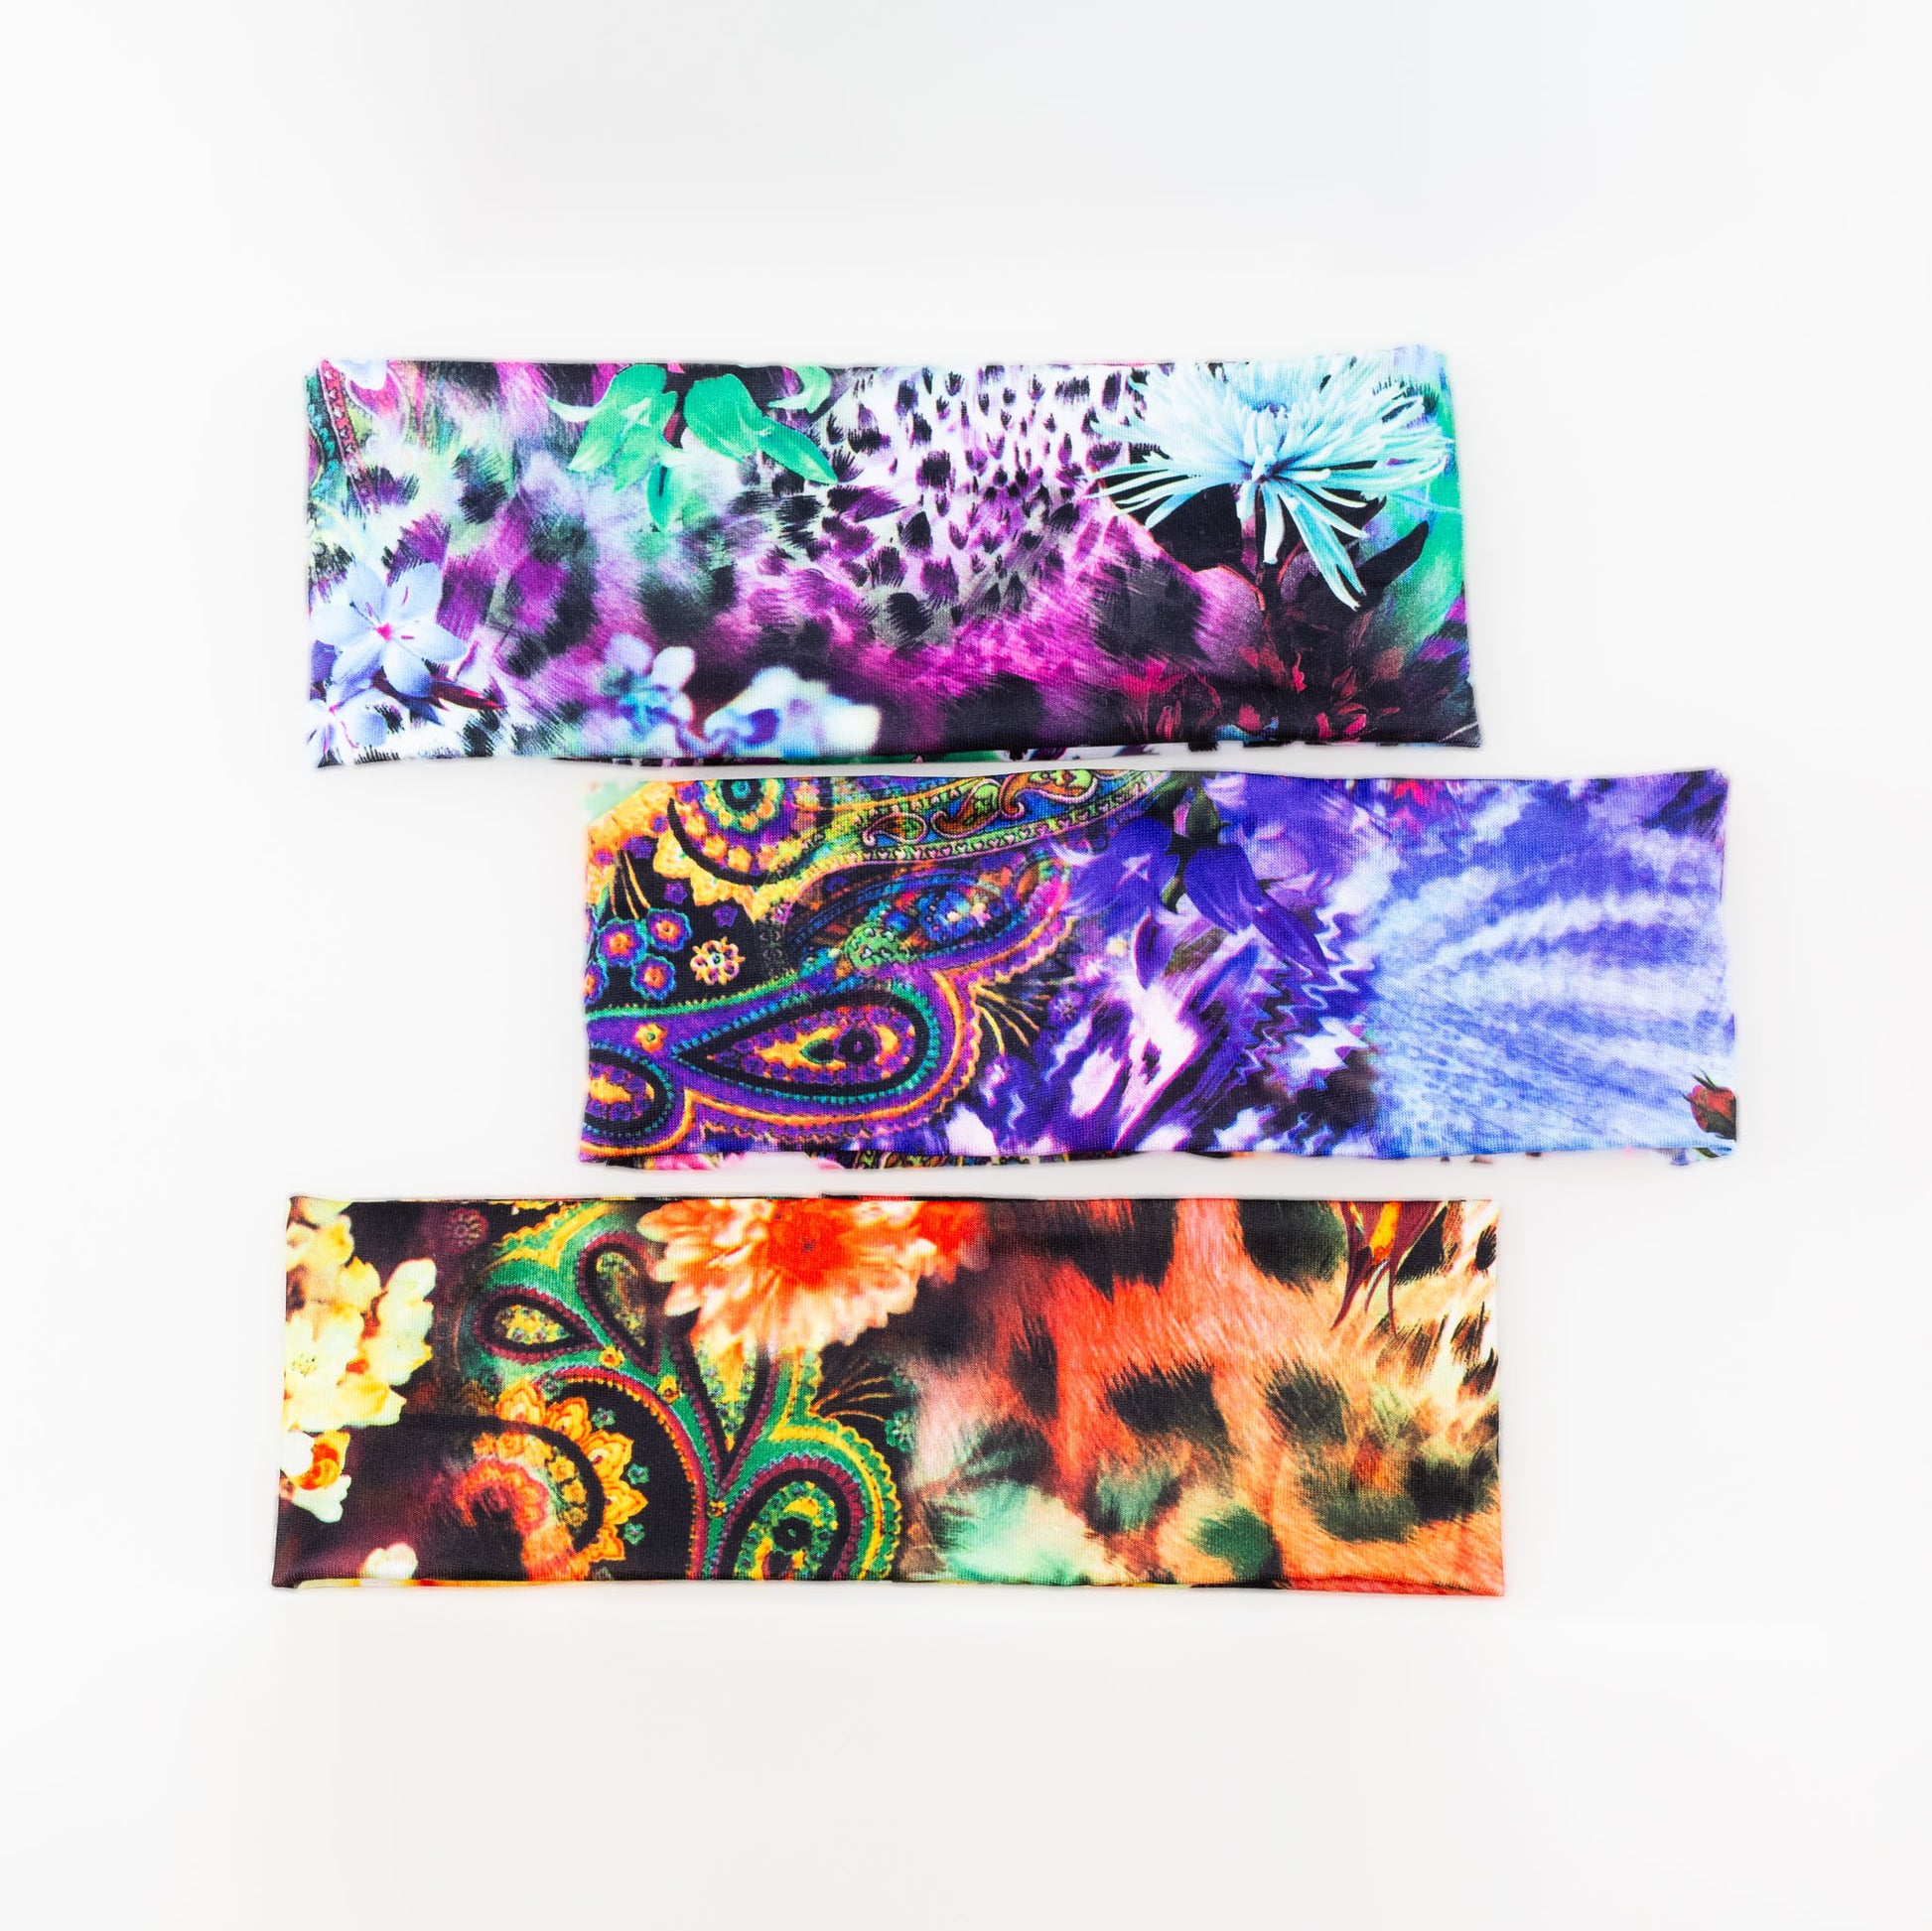 Bentițe de păr simple cu imprimeu abstract animal print, set 3 buc - Multicolor